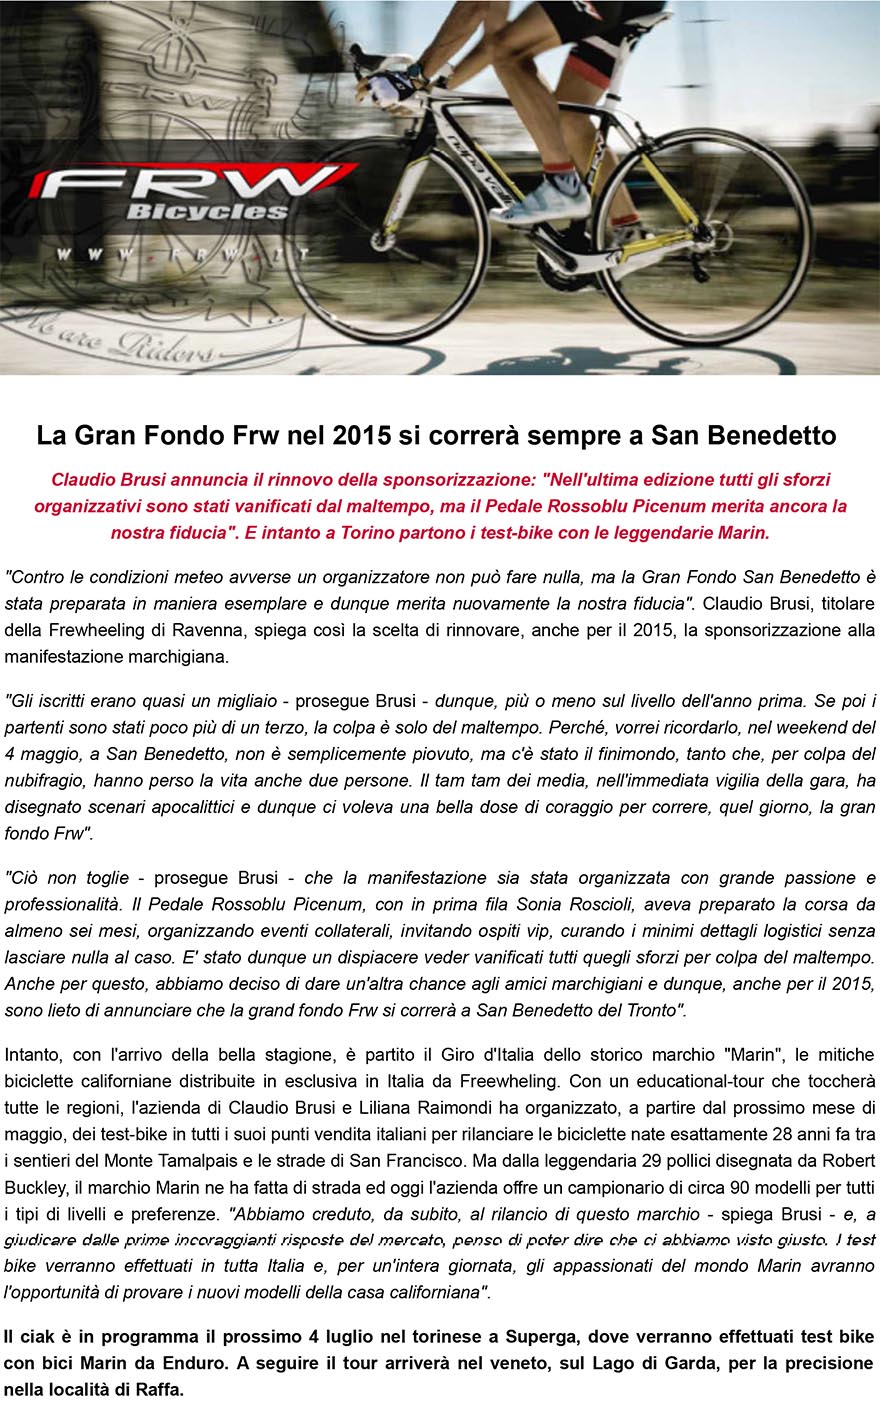 La Gran Fondo Frw nel 2015 si correrà sempre a San Benedetto